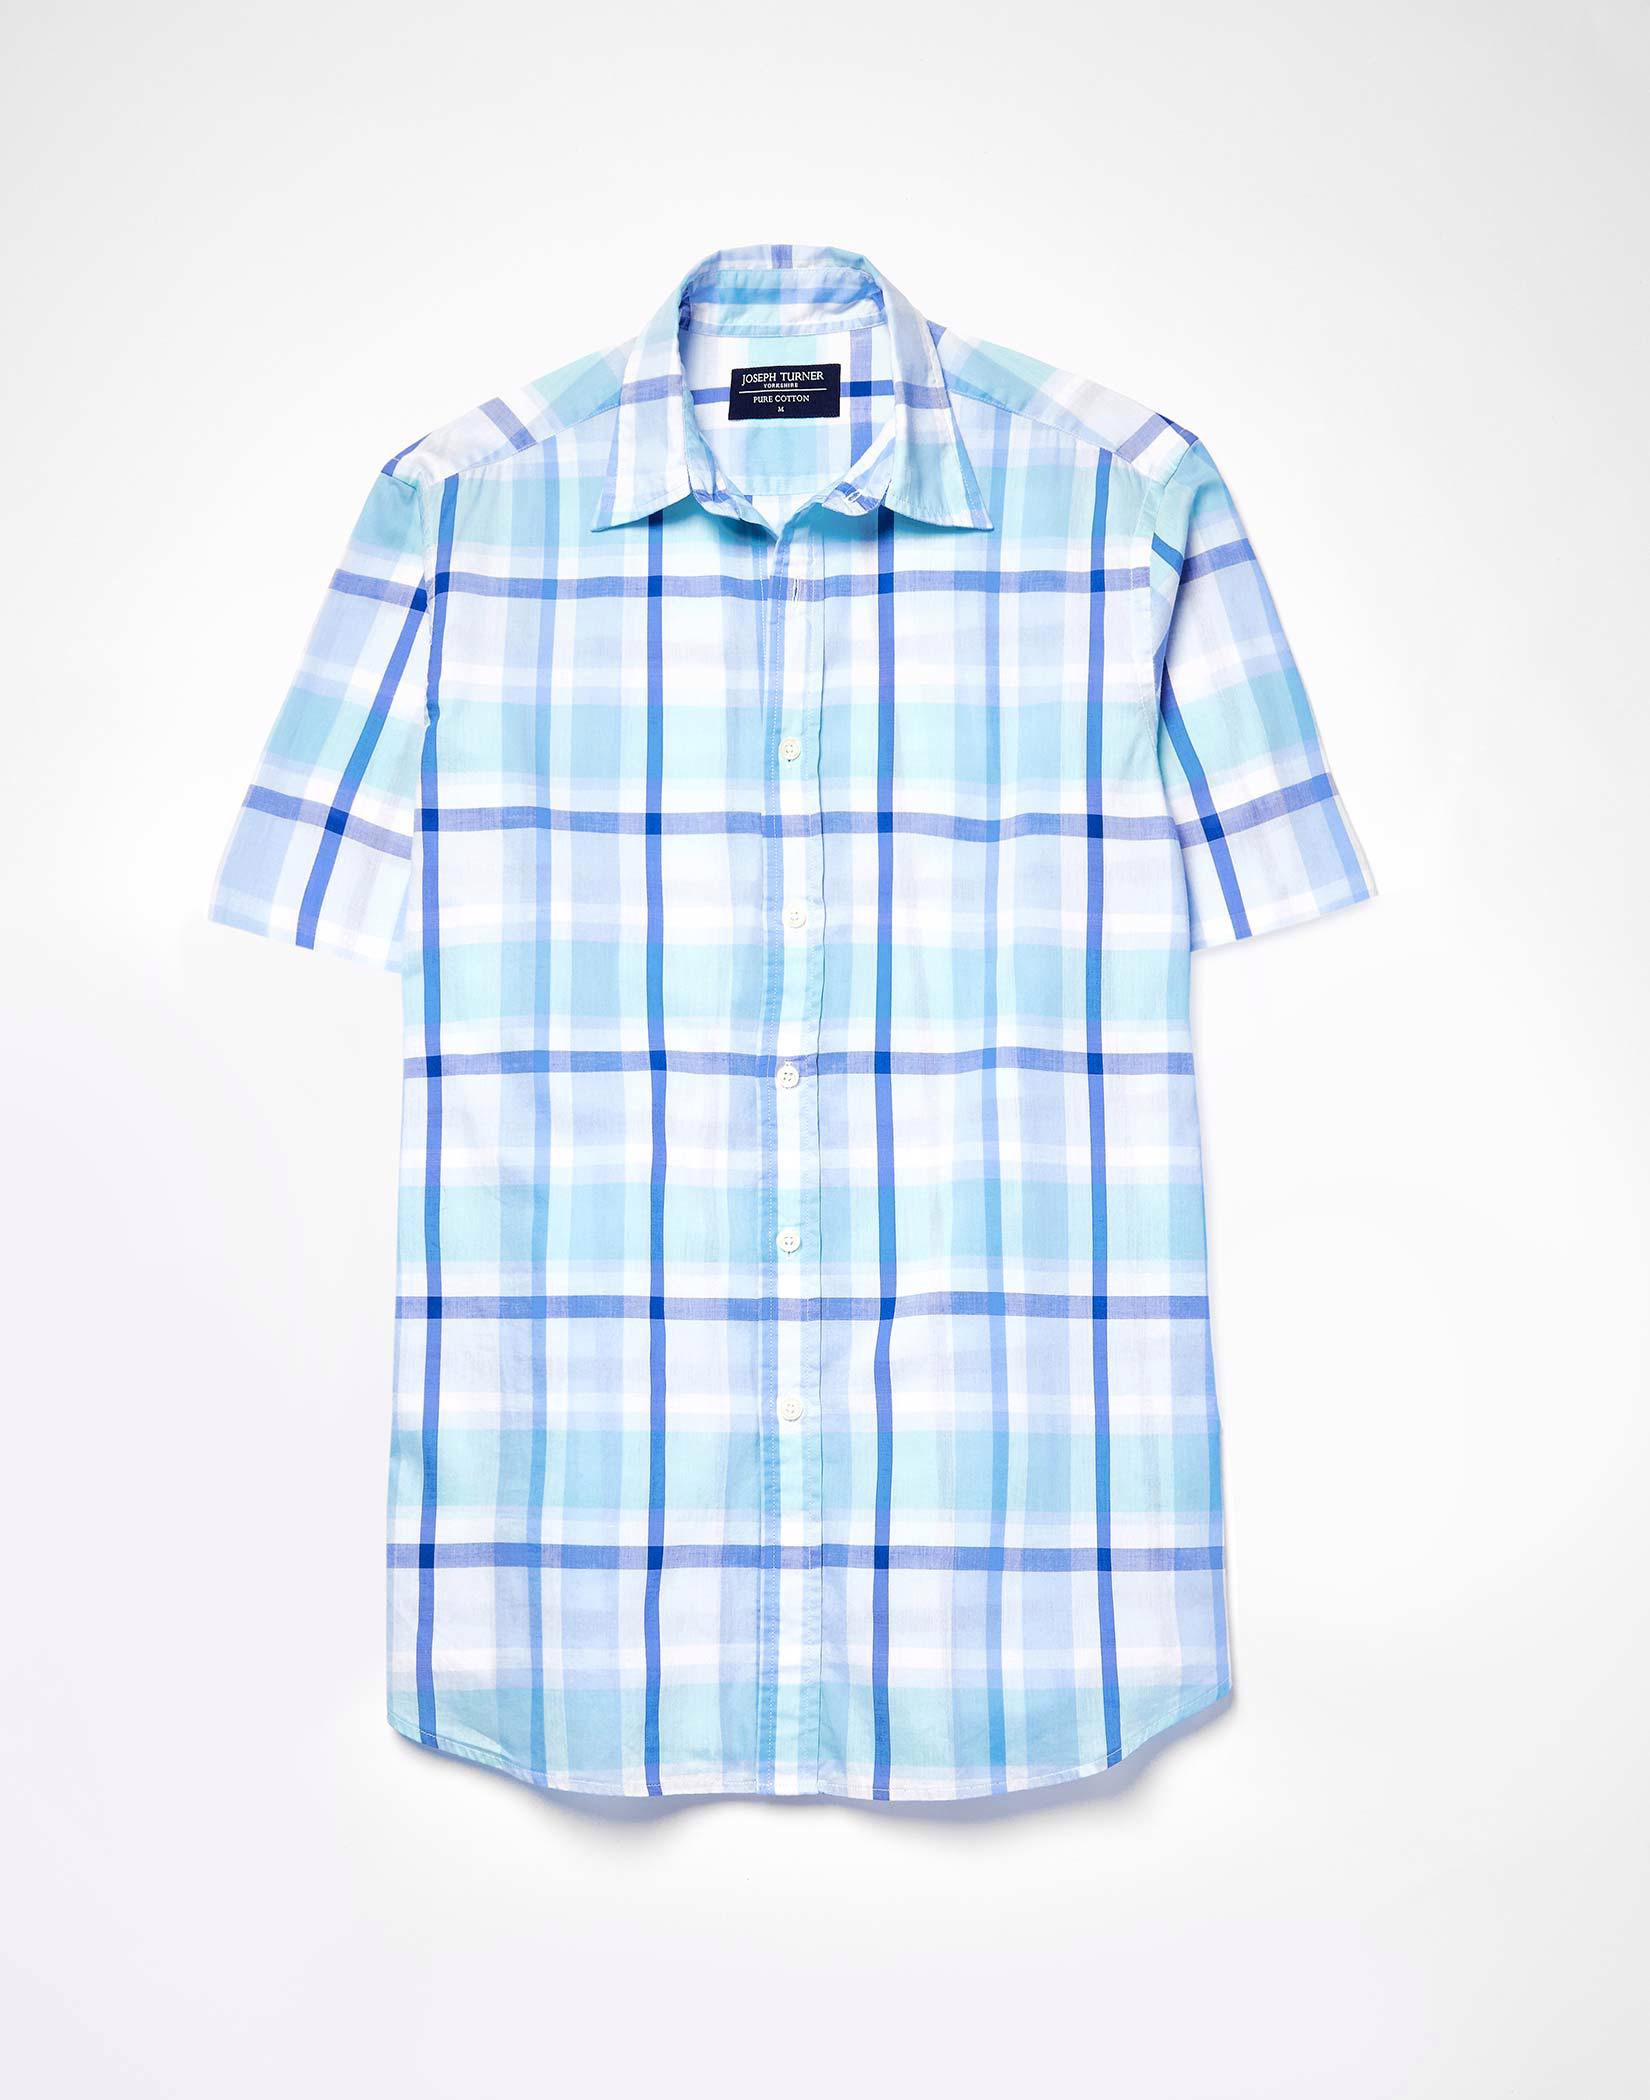 Weekend Shirt Short Sleeve - Navy/Aqua